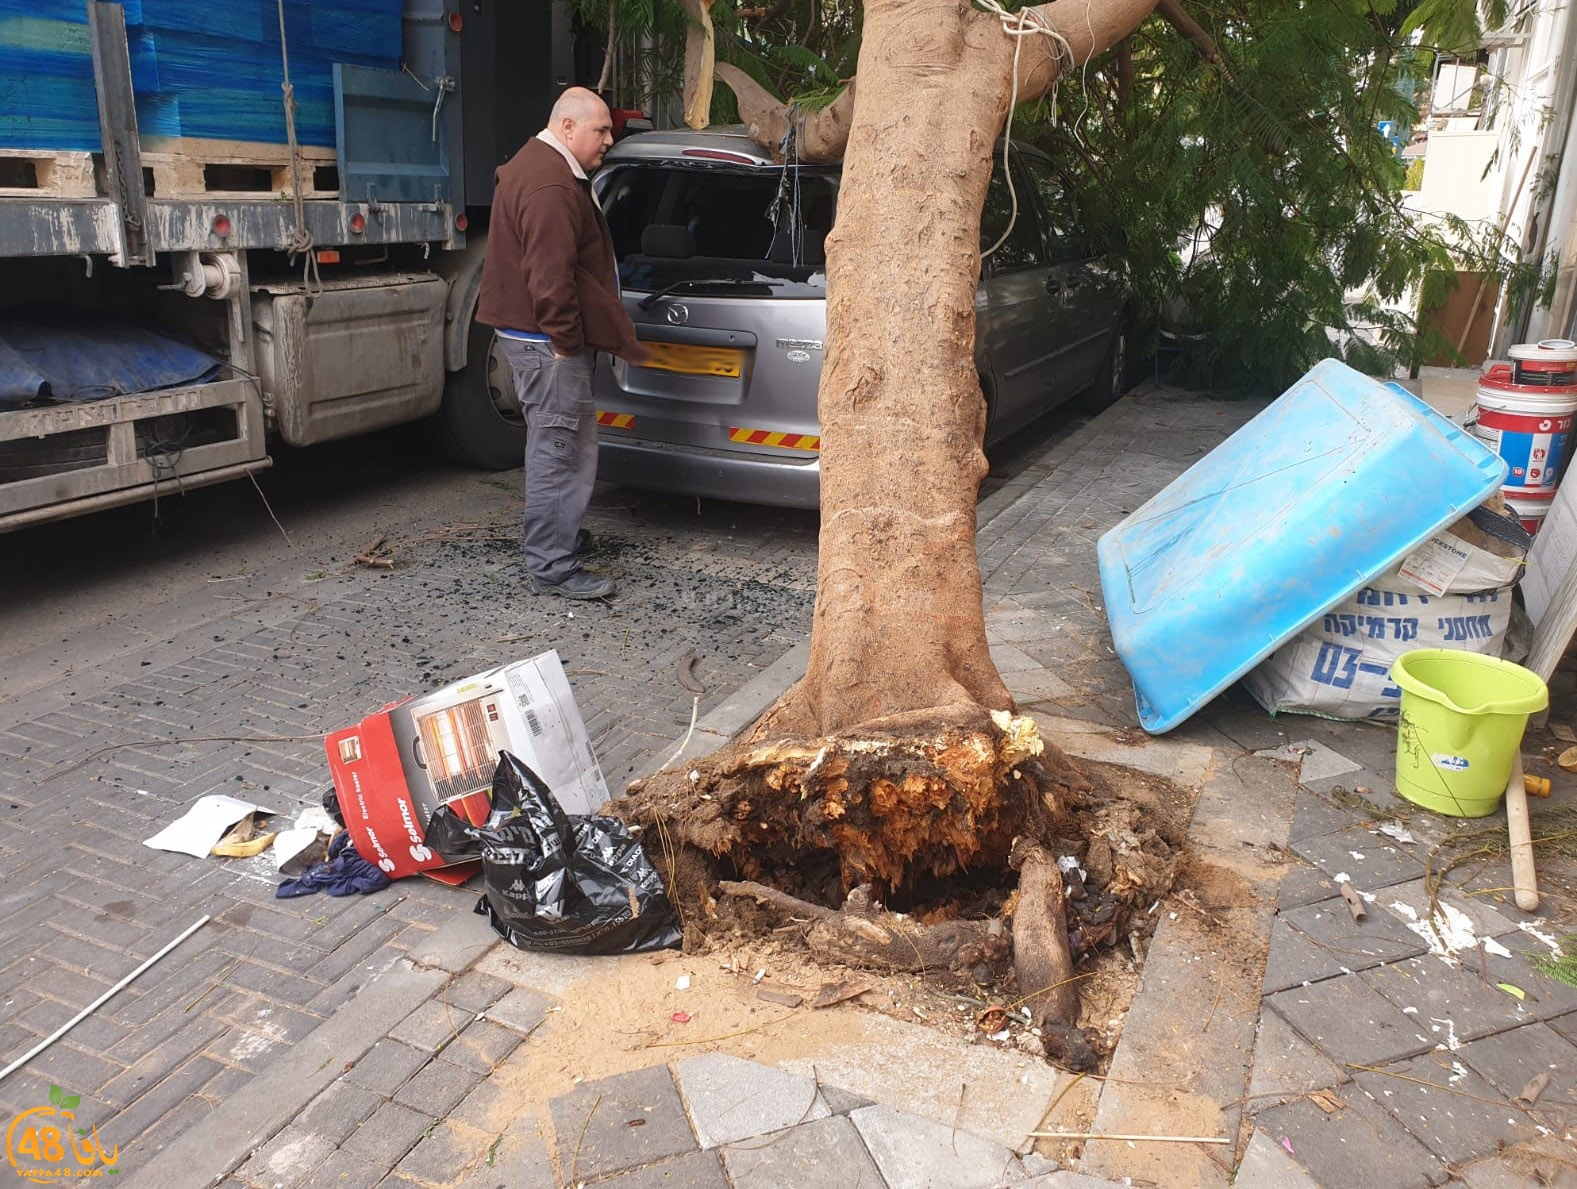  فيديو: لطف الله حال دون وقوع الكارثة اثر اصطدام شاحنة بشجرة ضخمة في يافا 